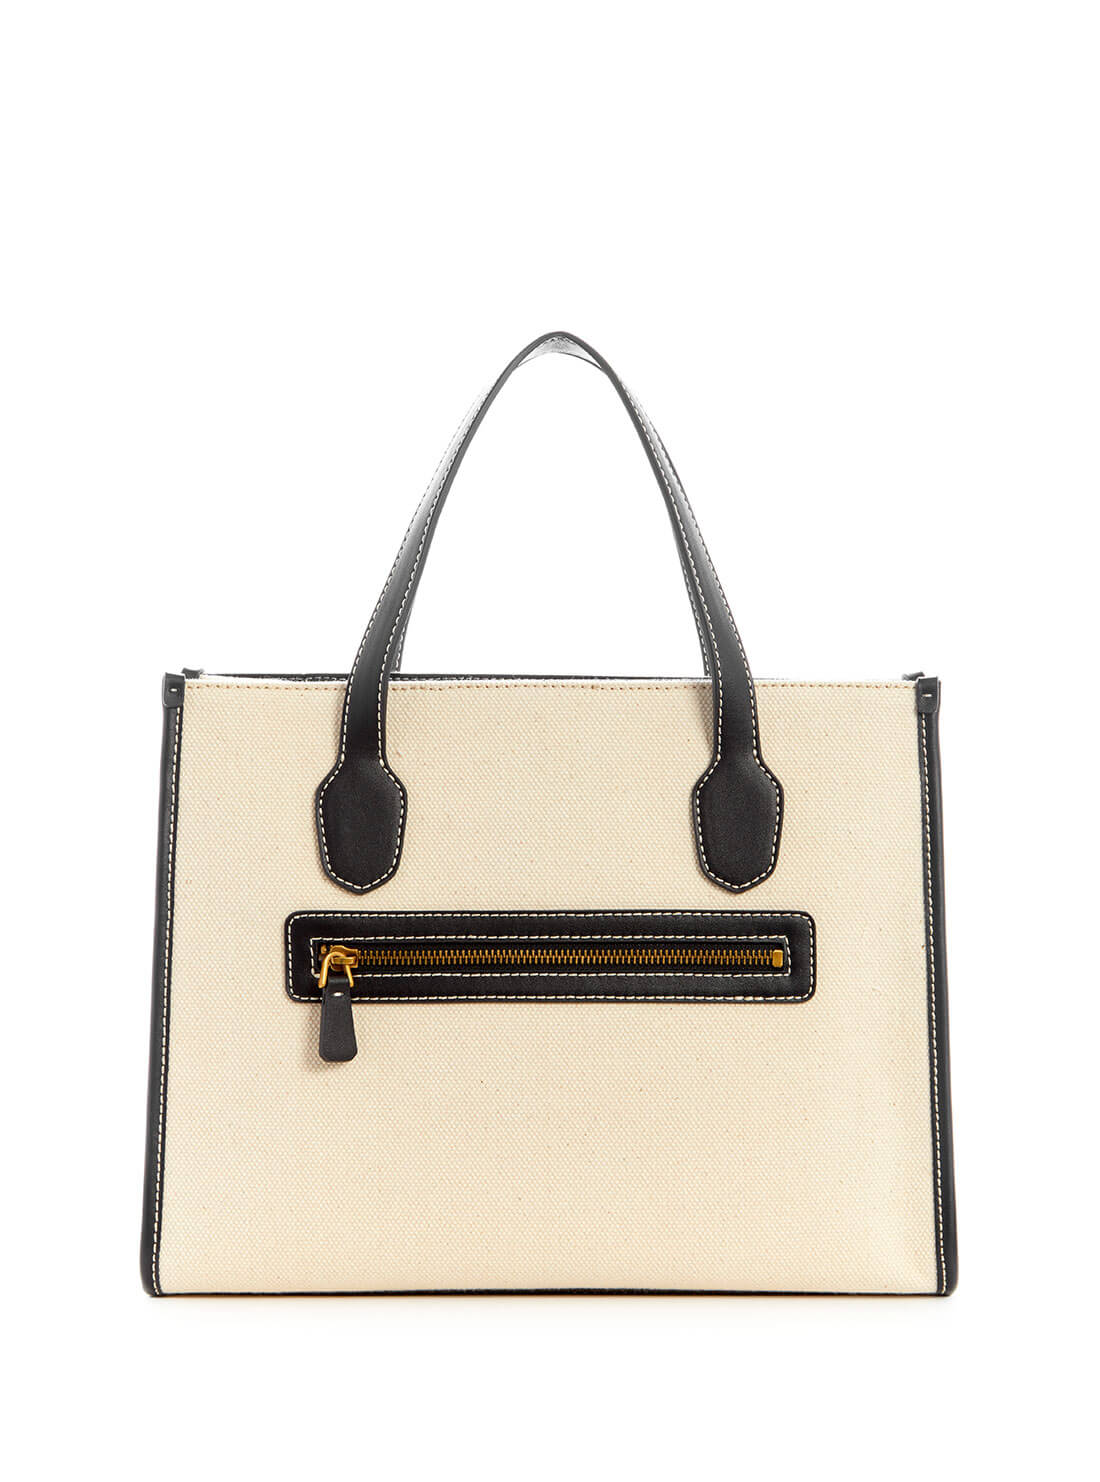 Black and Natural Silvana Small Tote Bag | GUESS Women's Handbags | back view